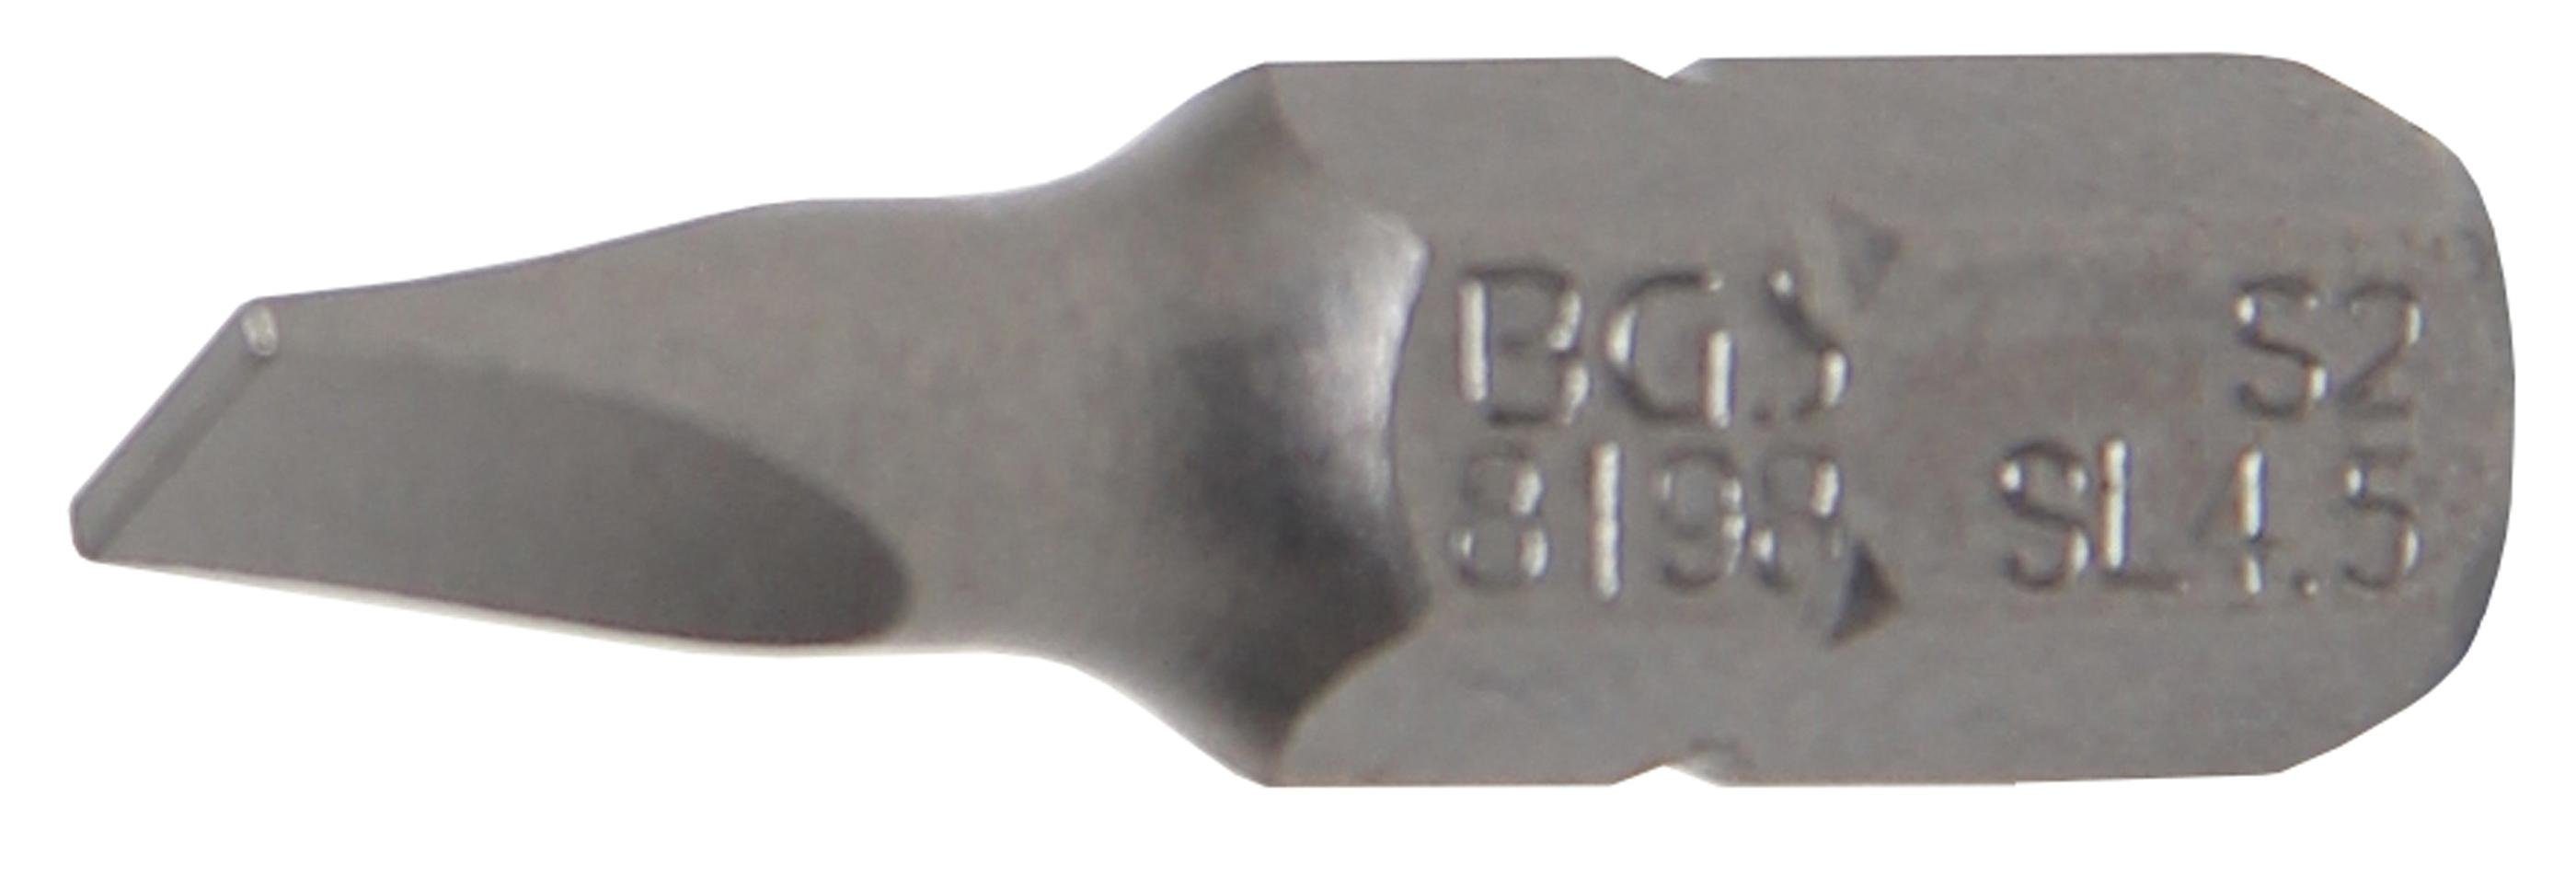 BGS technic Bit-Schraubendreher Bit, Antrieb Außensechskant 6,3 mm (1/4), Schlitz 4,5 mm